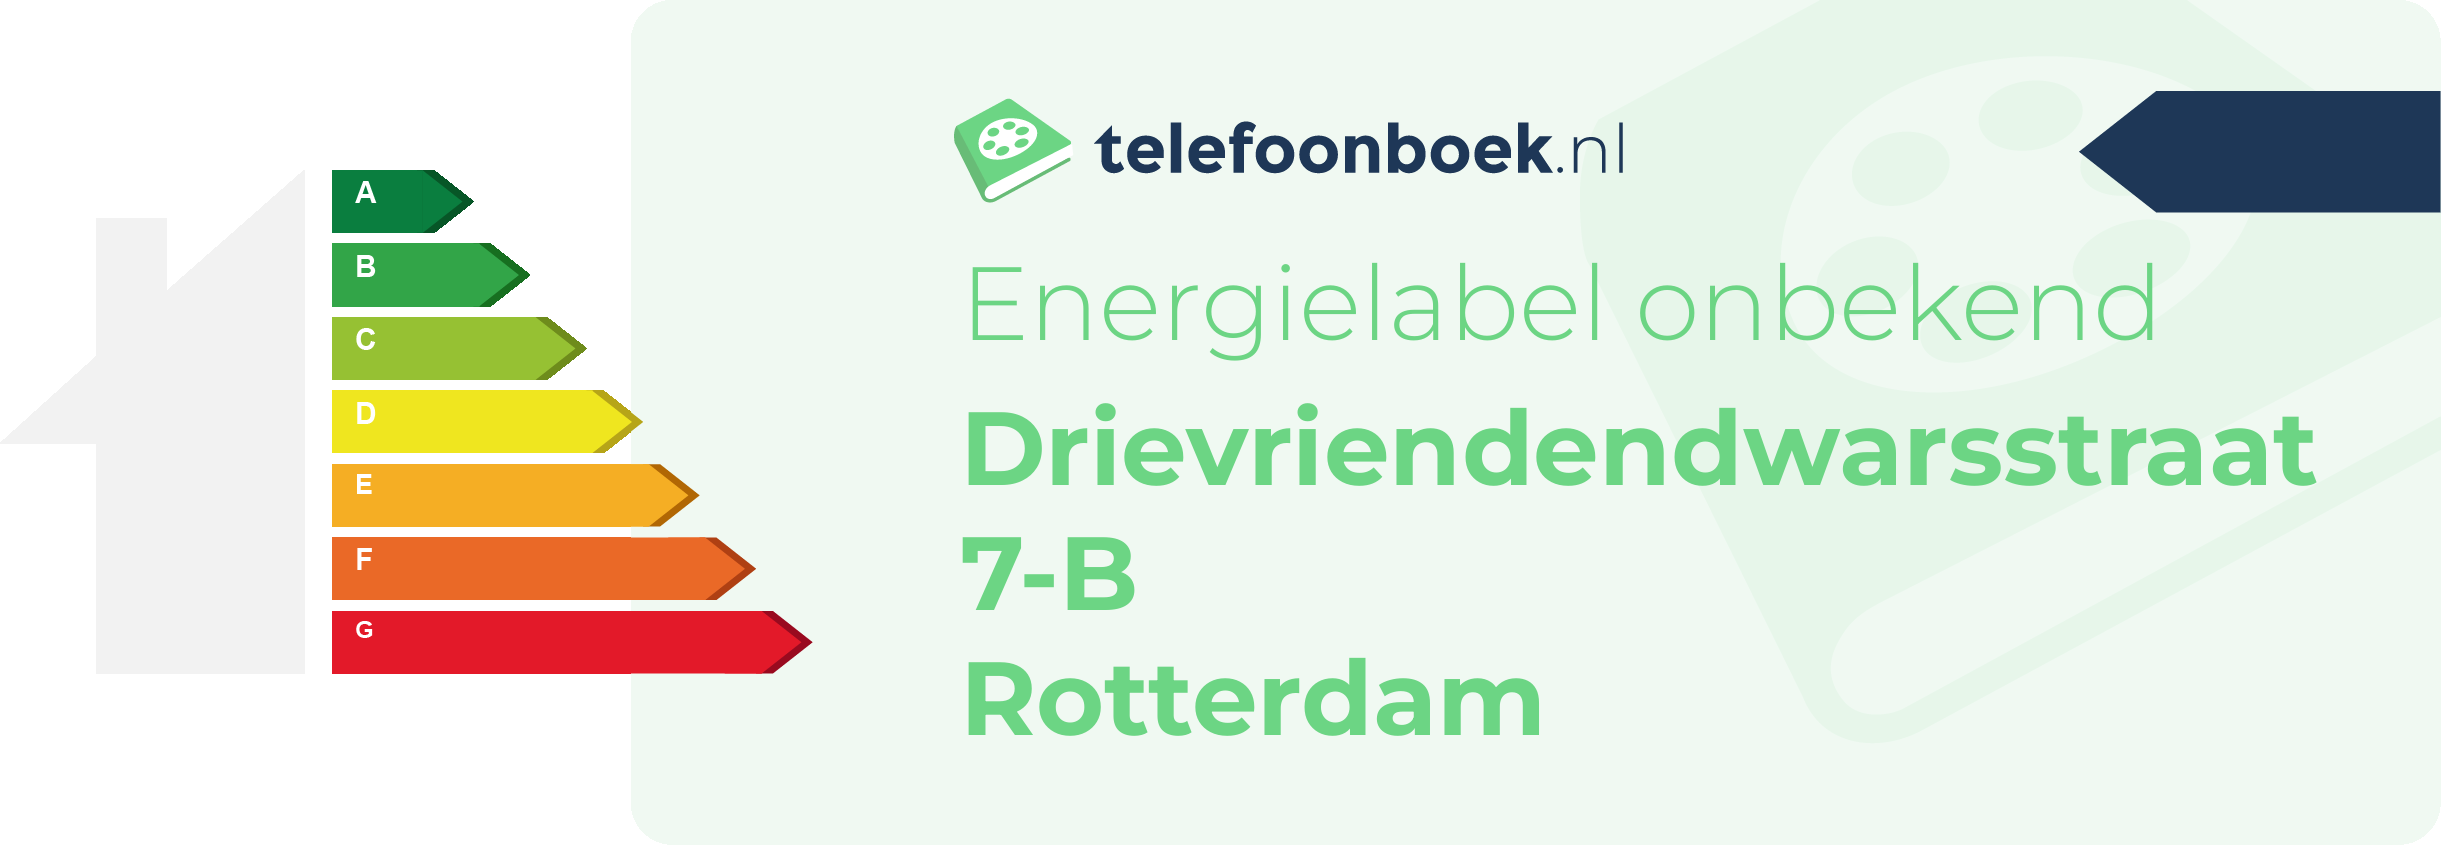 Energielabel Drievriendendwarsstraat 7-B Rotterdam